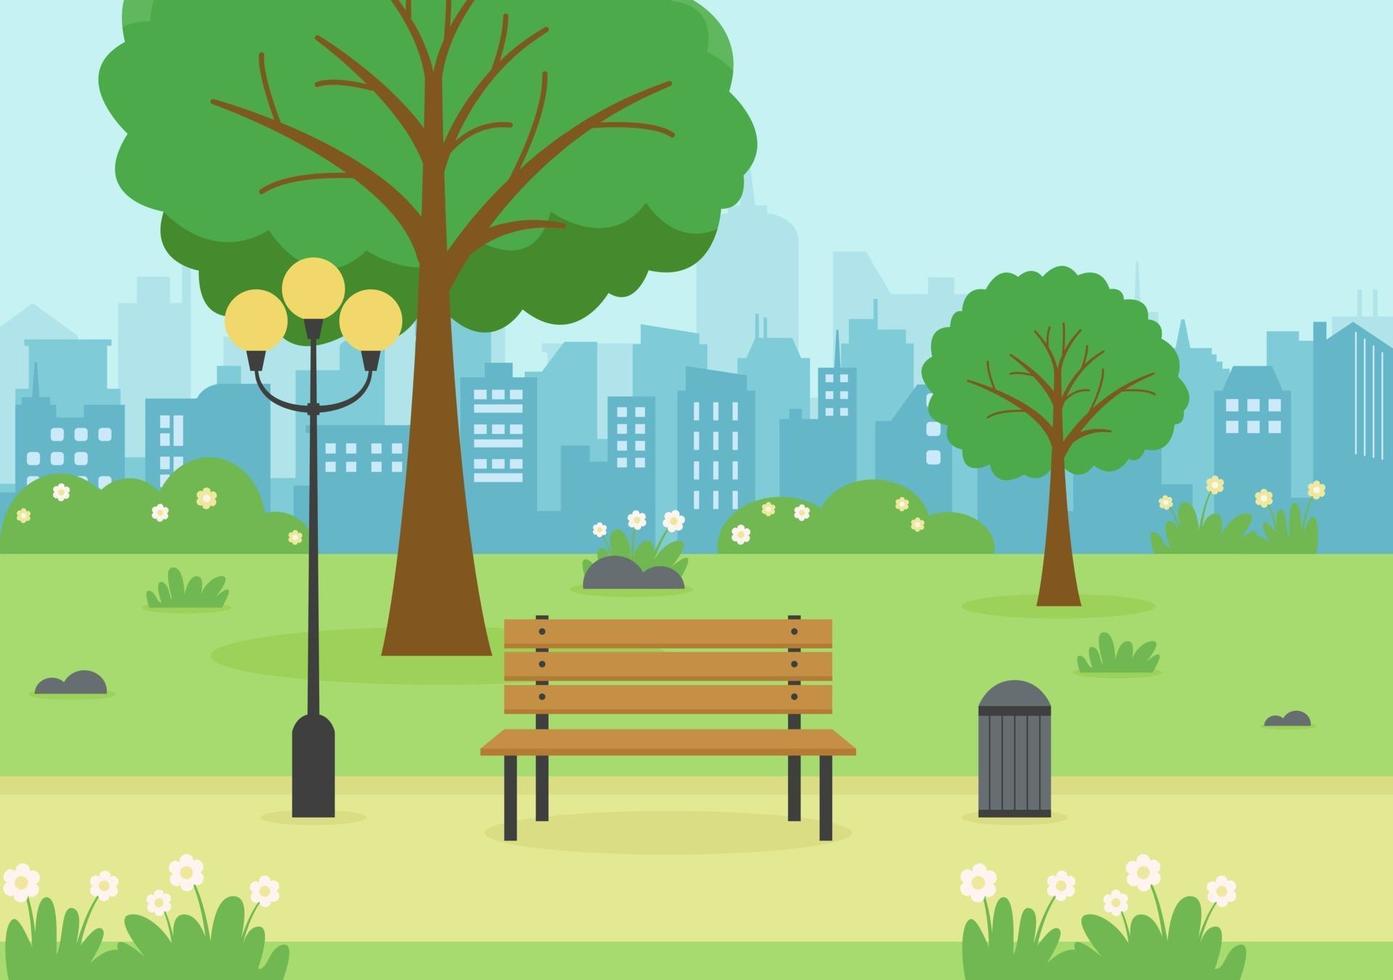 city park illustration för människor som gör sport, kopplar av, spelar eller rekreation med gröna träd och gräsmatta. landskap urban bakgrund vektor